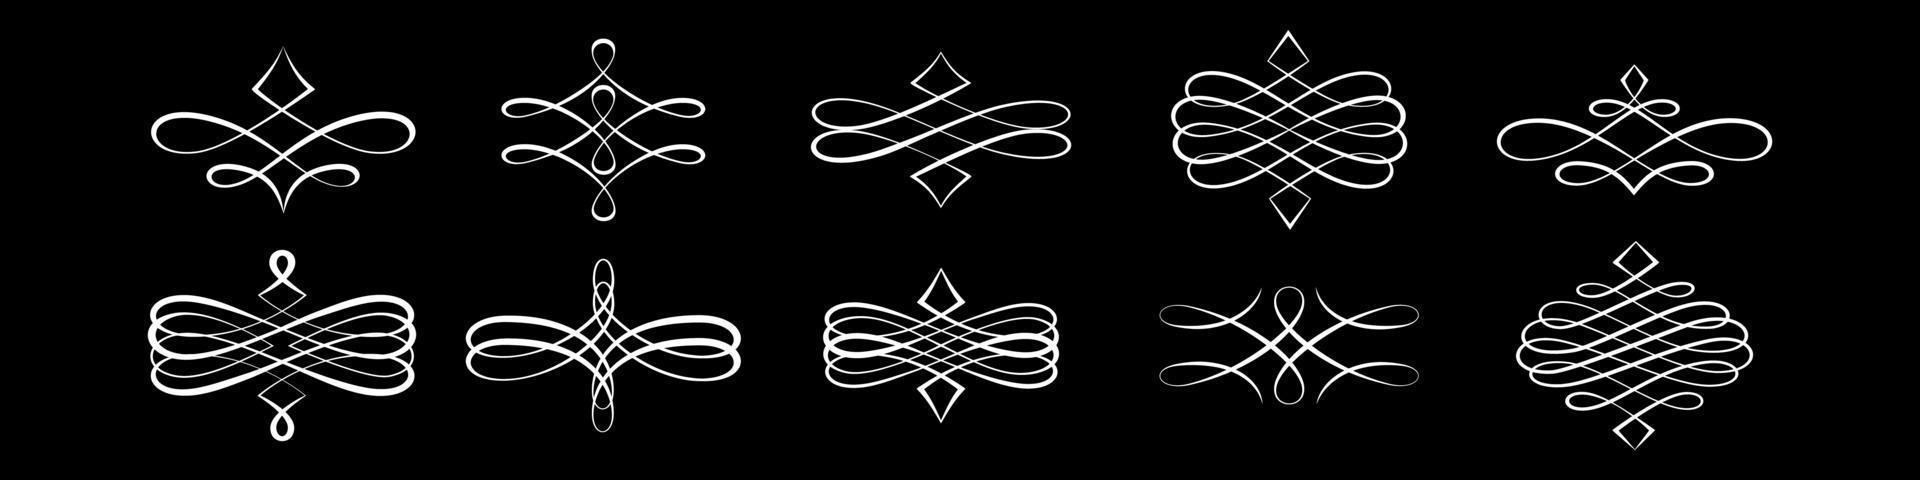 gekrulde kalligrafische ontwerpelementen voor logo vector